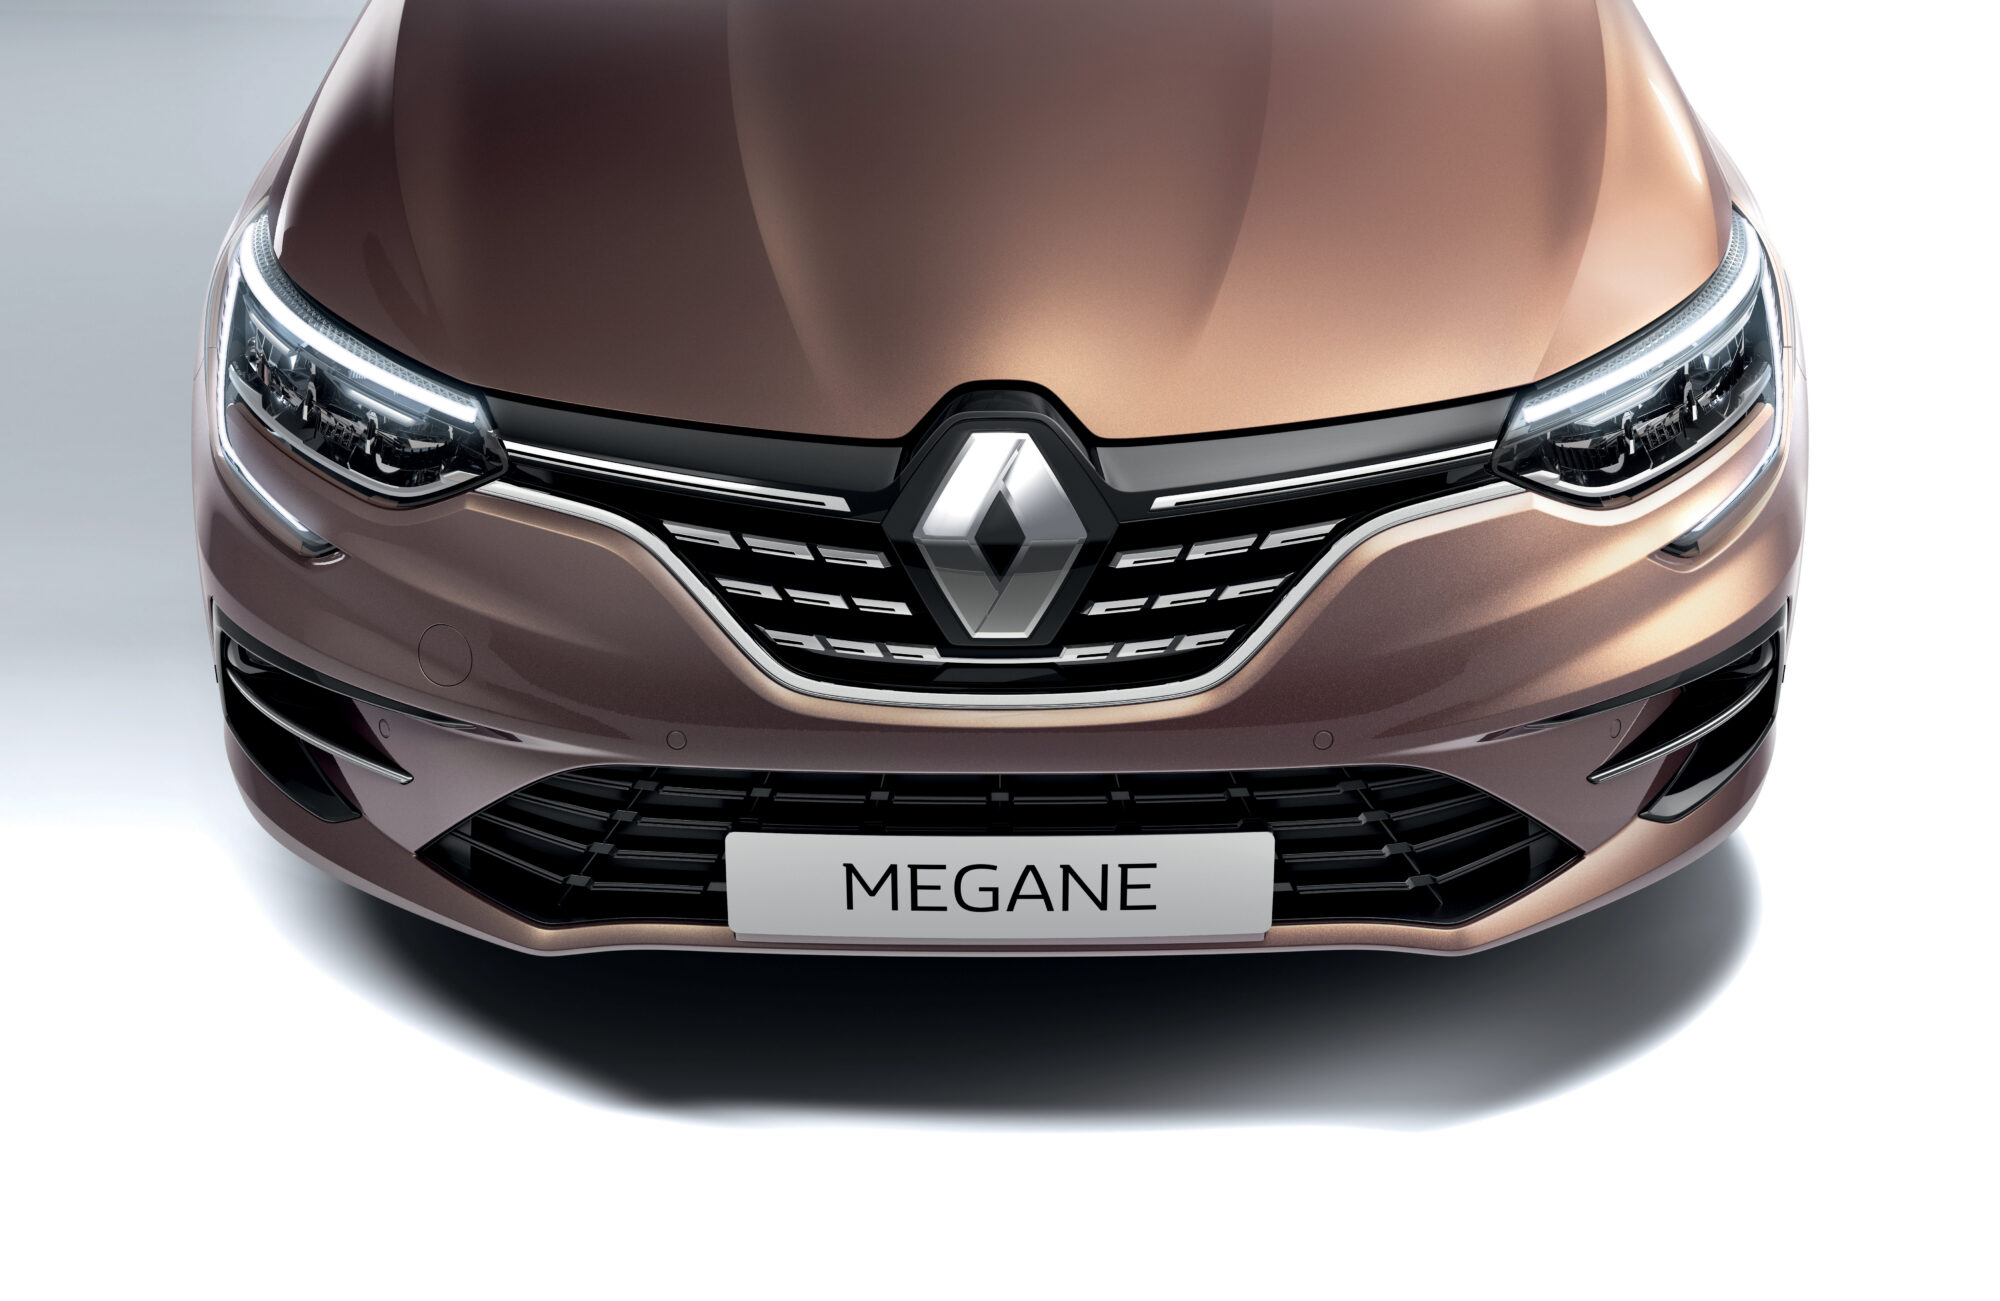 2020 - Nouvelle Renault MEGANE.jpeg